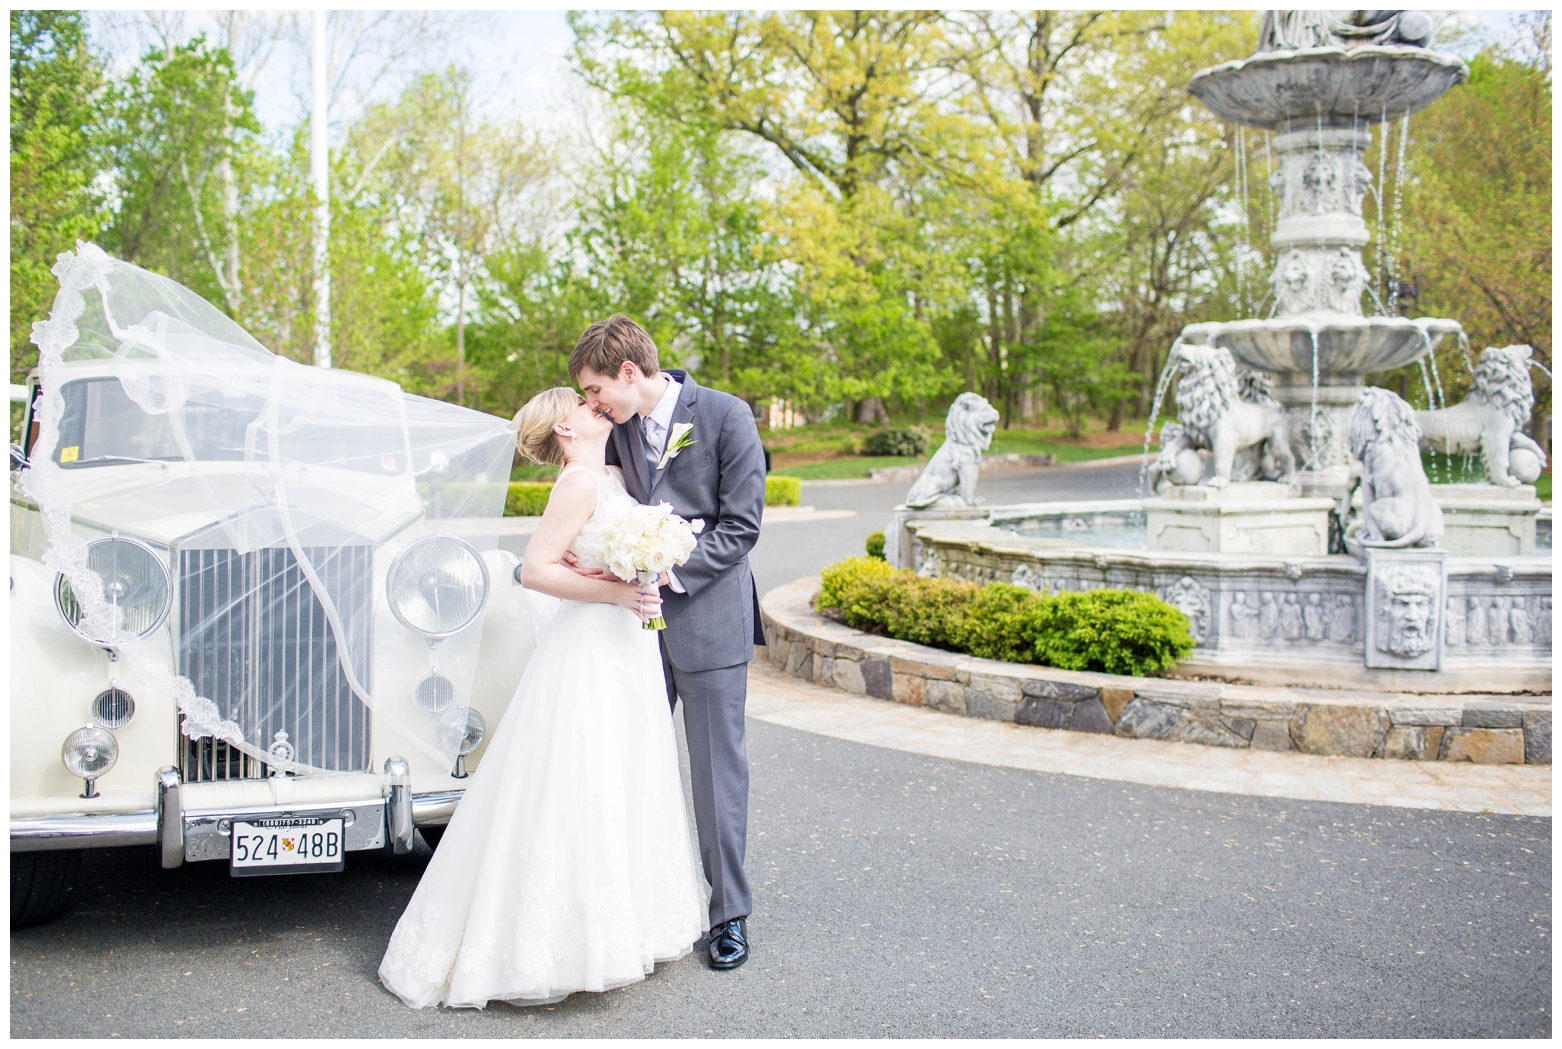 View More: http://hopetaylorphotographyphotos.pass.us/matt-and-kathleen-wedding-sneak-peek